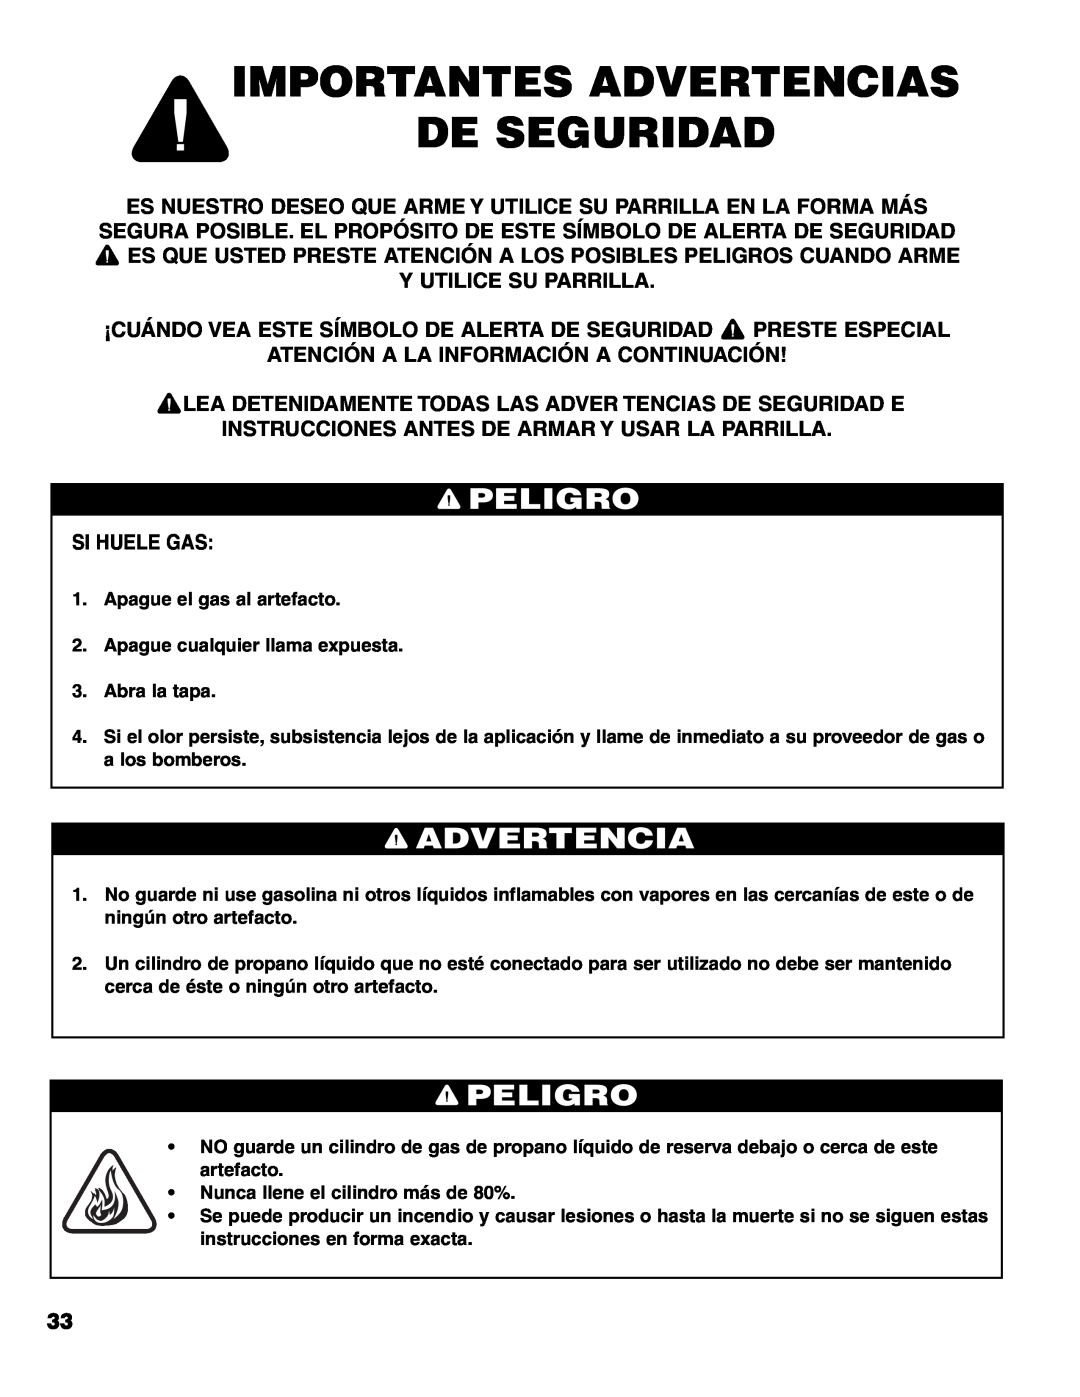 Brinkmann 7541 Series owner manual Importantes Advertencias De Seguridad, Peligro, Y Utilice Su Parrilla, Si Huele Gas 